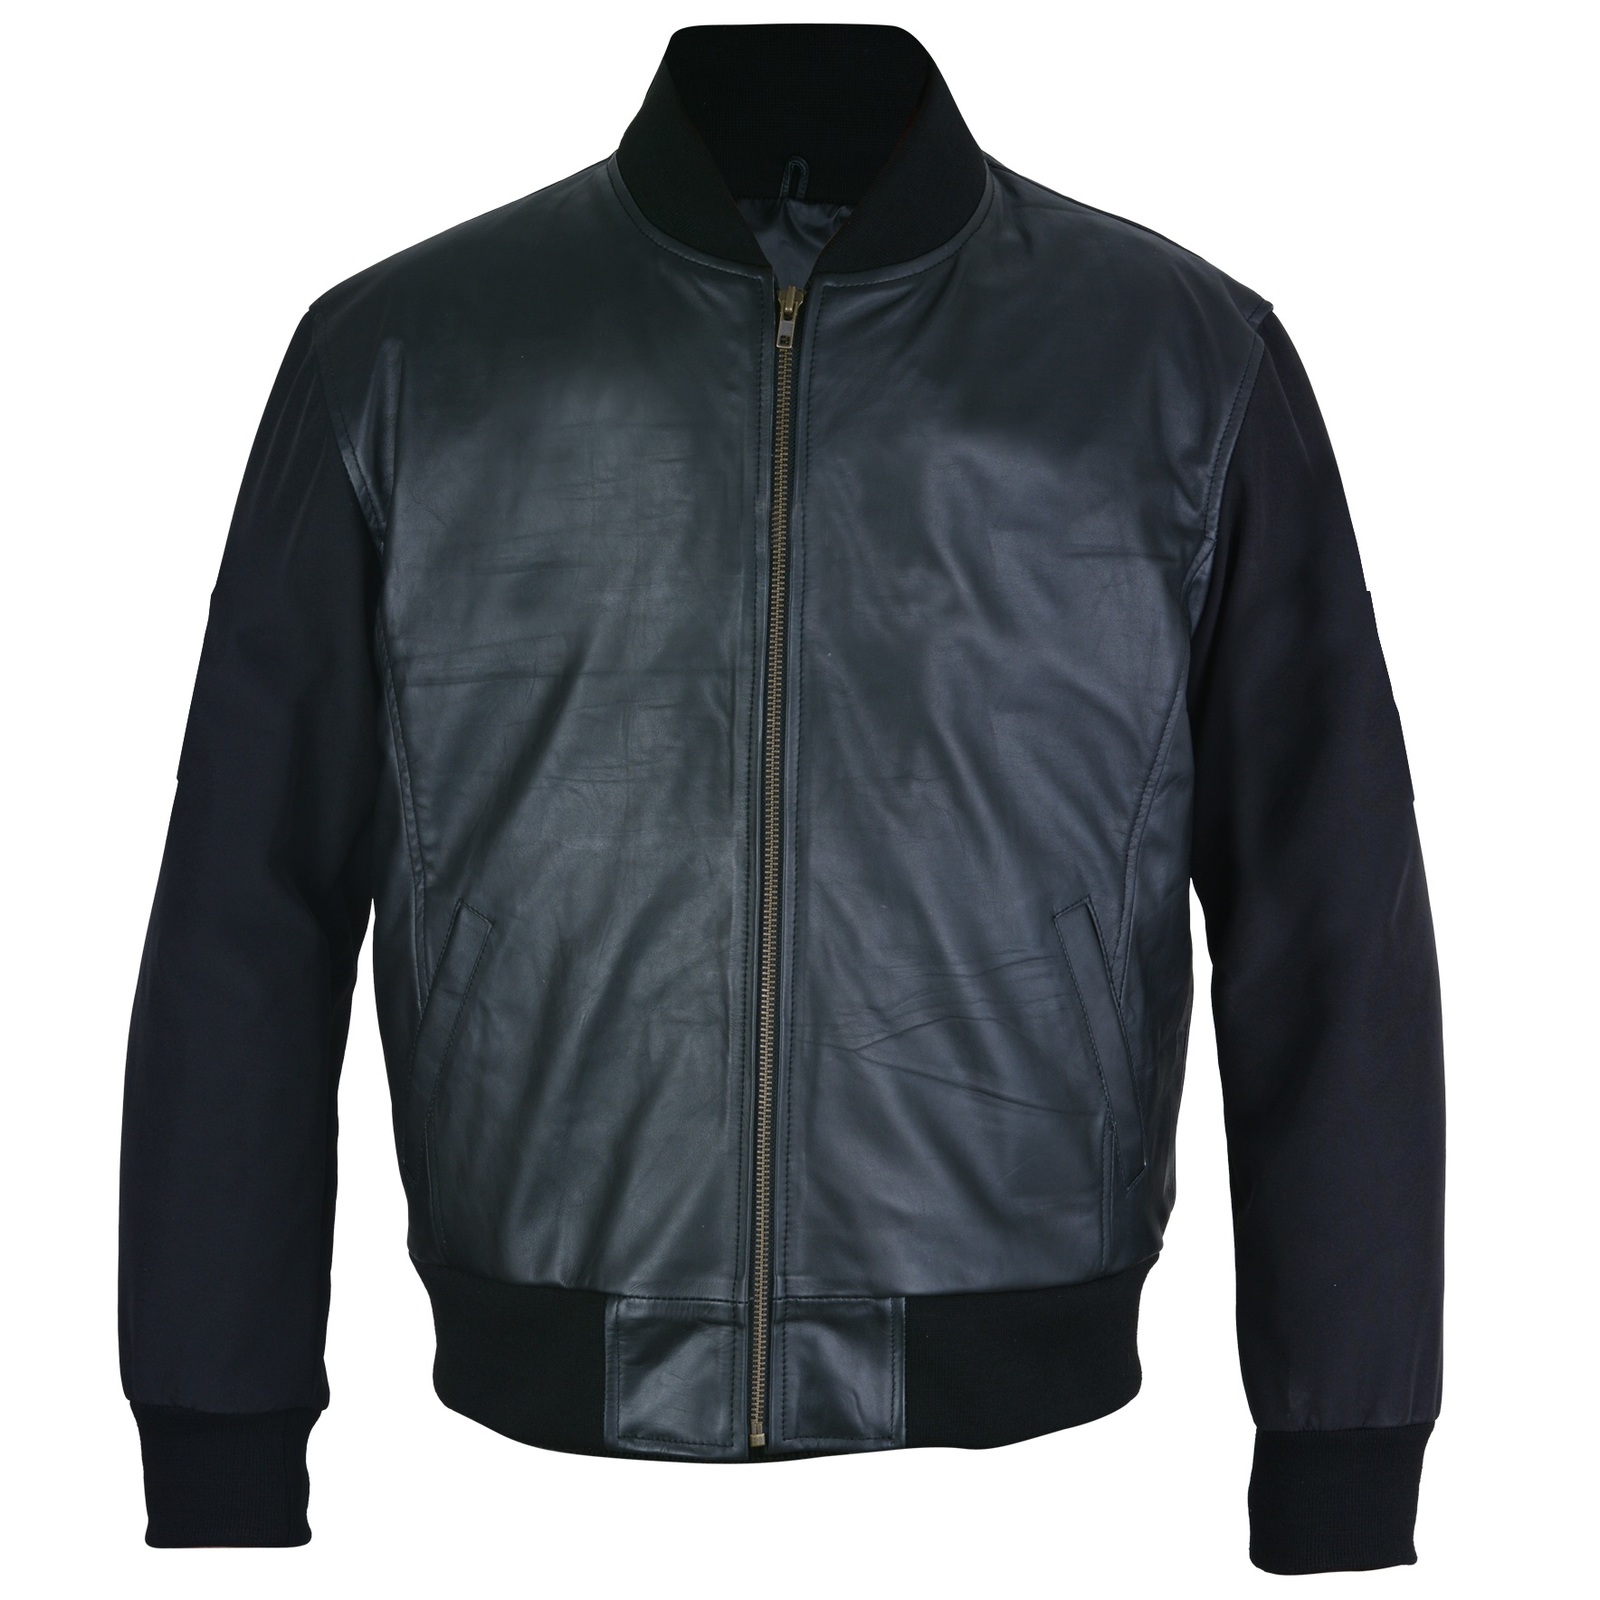 Plain Black Real Jacket Men - Genuine Leather Jacket with Wool Sleeves ...